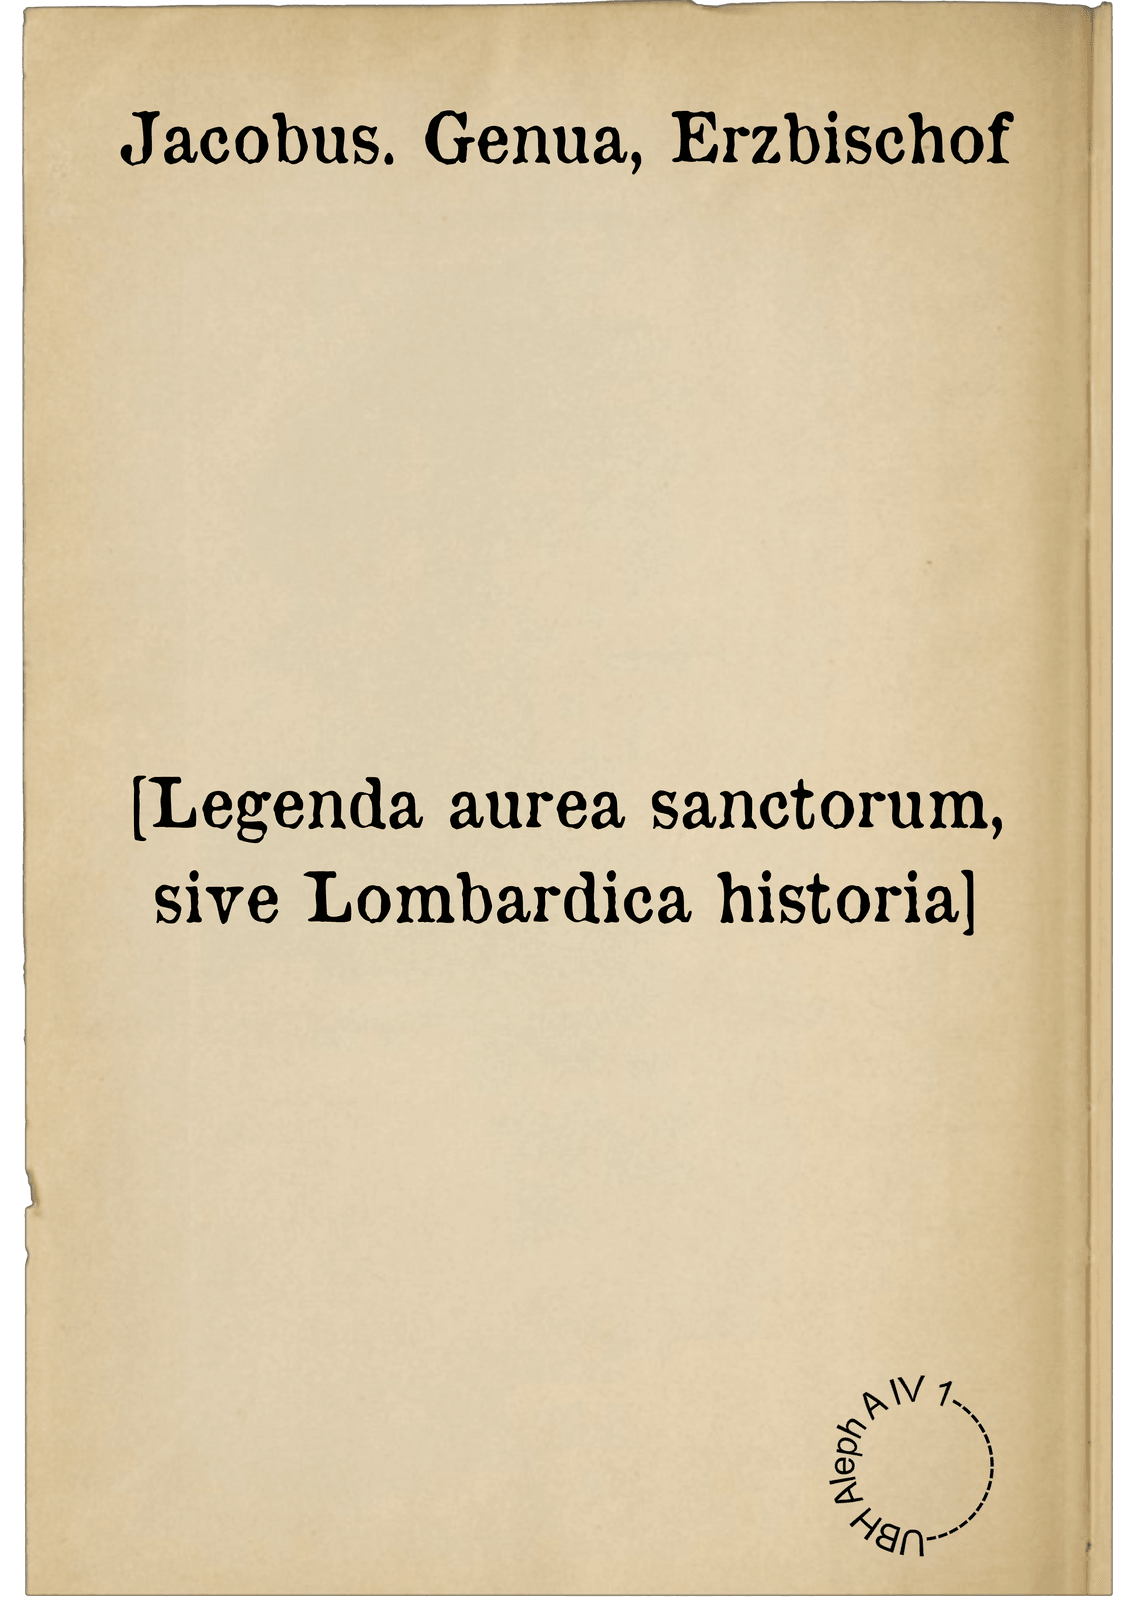 [Legenda aurea sanctorum, sive Lombardica historia]